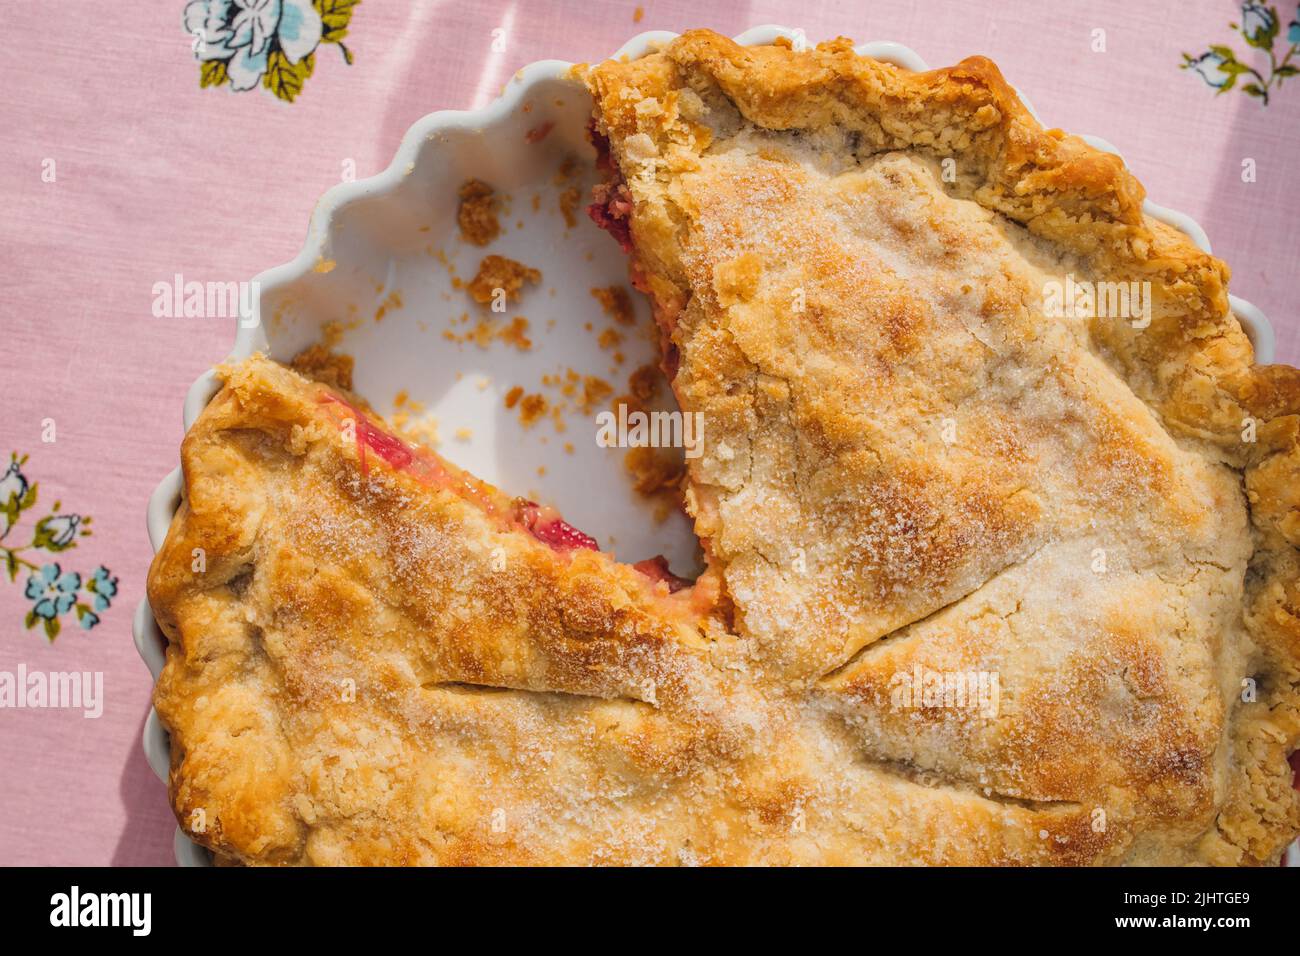 vue de haut en bas de la tarte à la rhubarbe avec tranche manquante, nappe rose avec roses bleues Banque D'Images